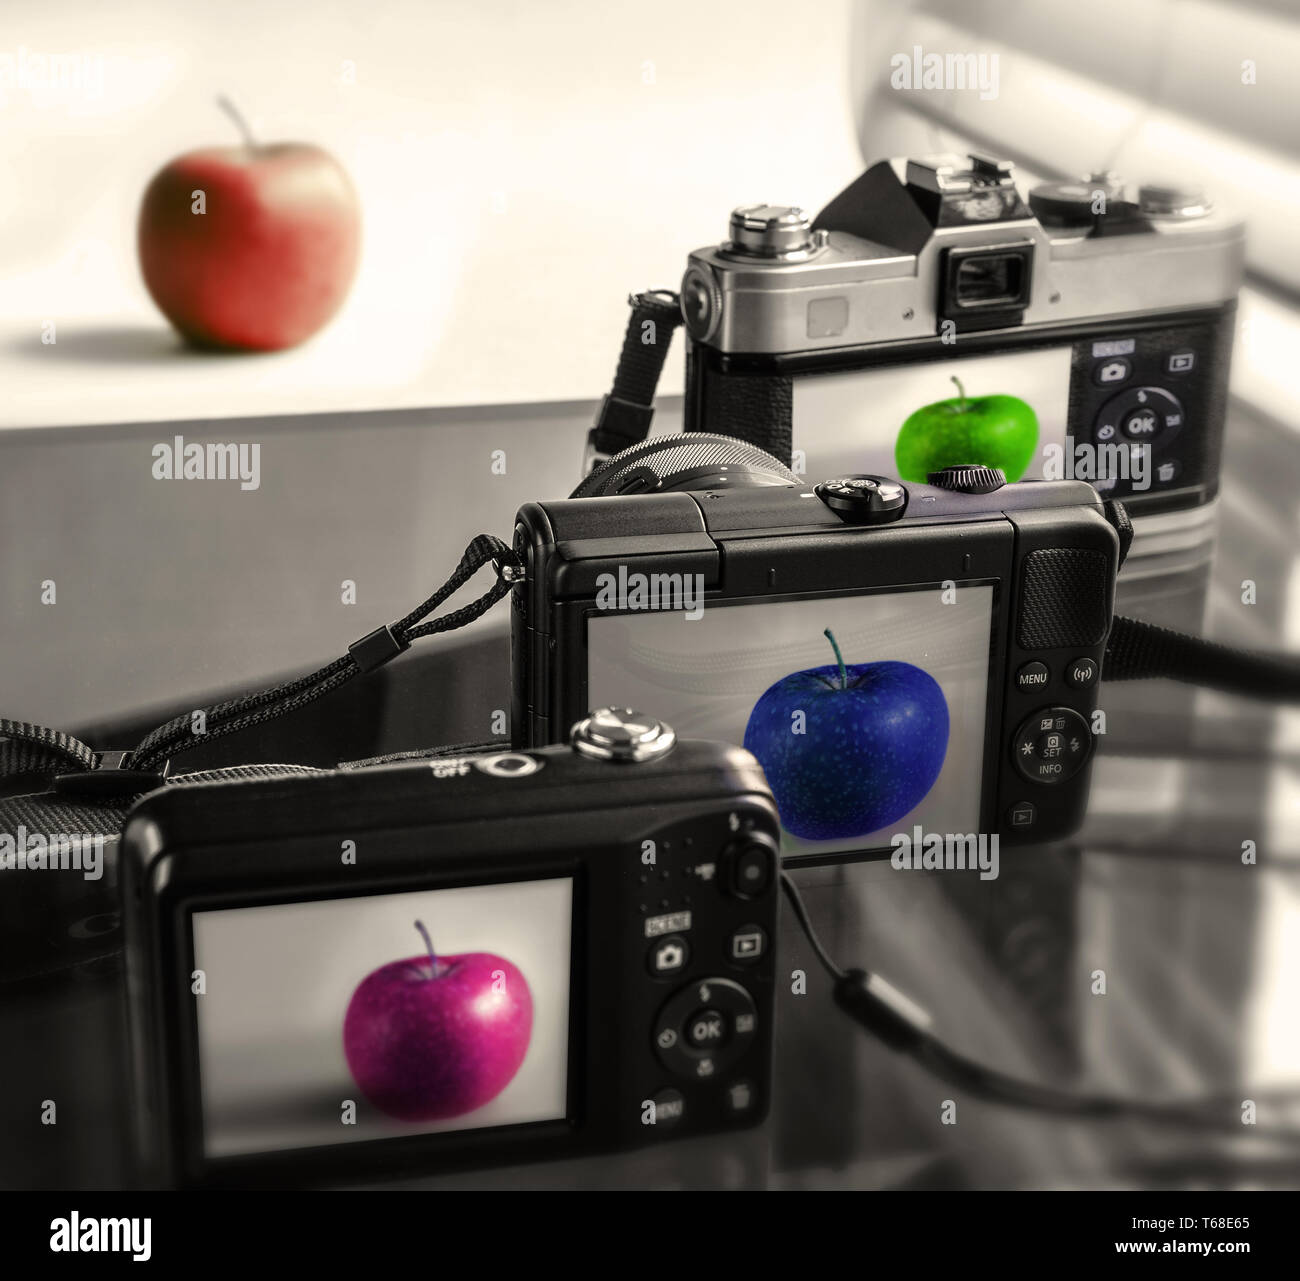 Tre fotocamere che presentano l'immagine della mela (davanti), nessuna è fedele all'originale. Concetto. Foto Stock